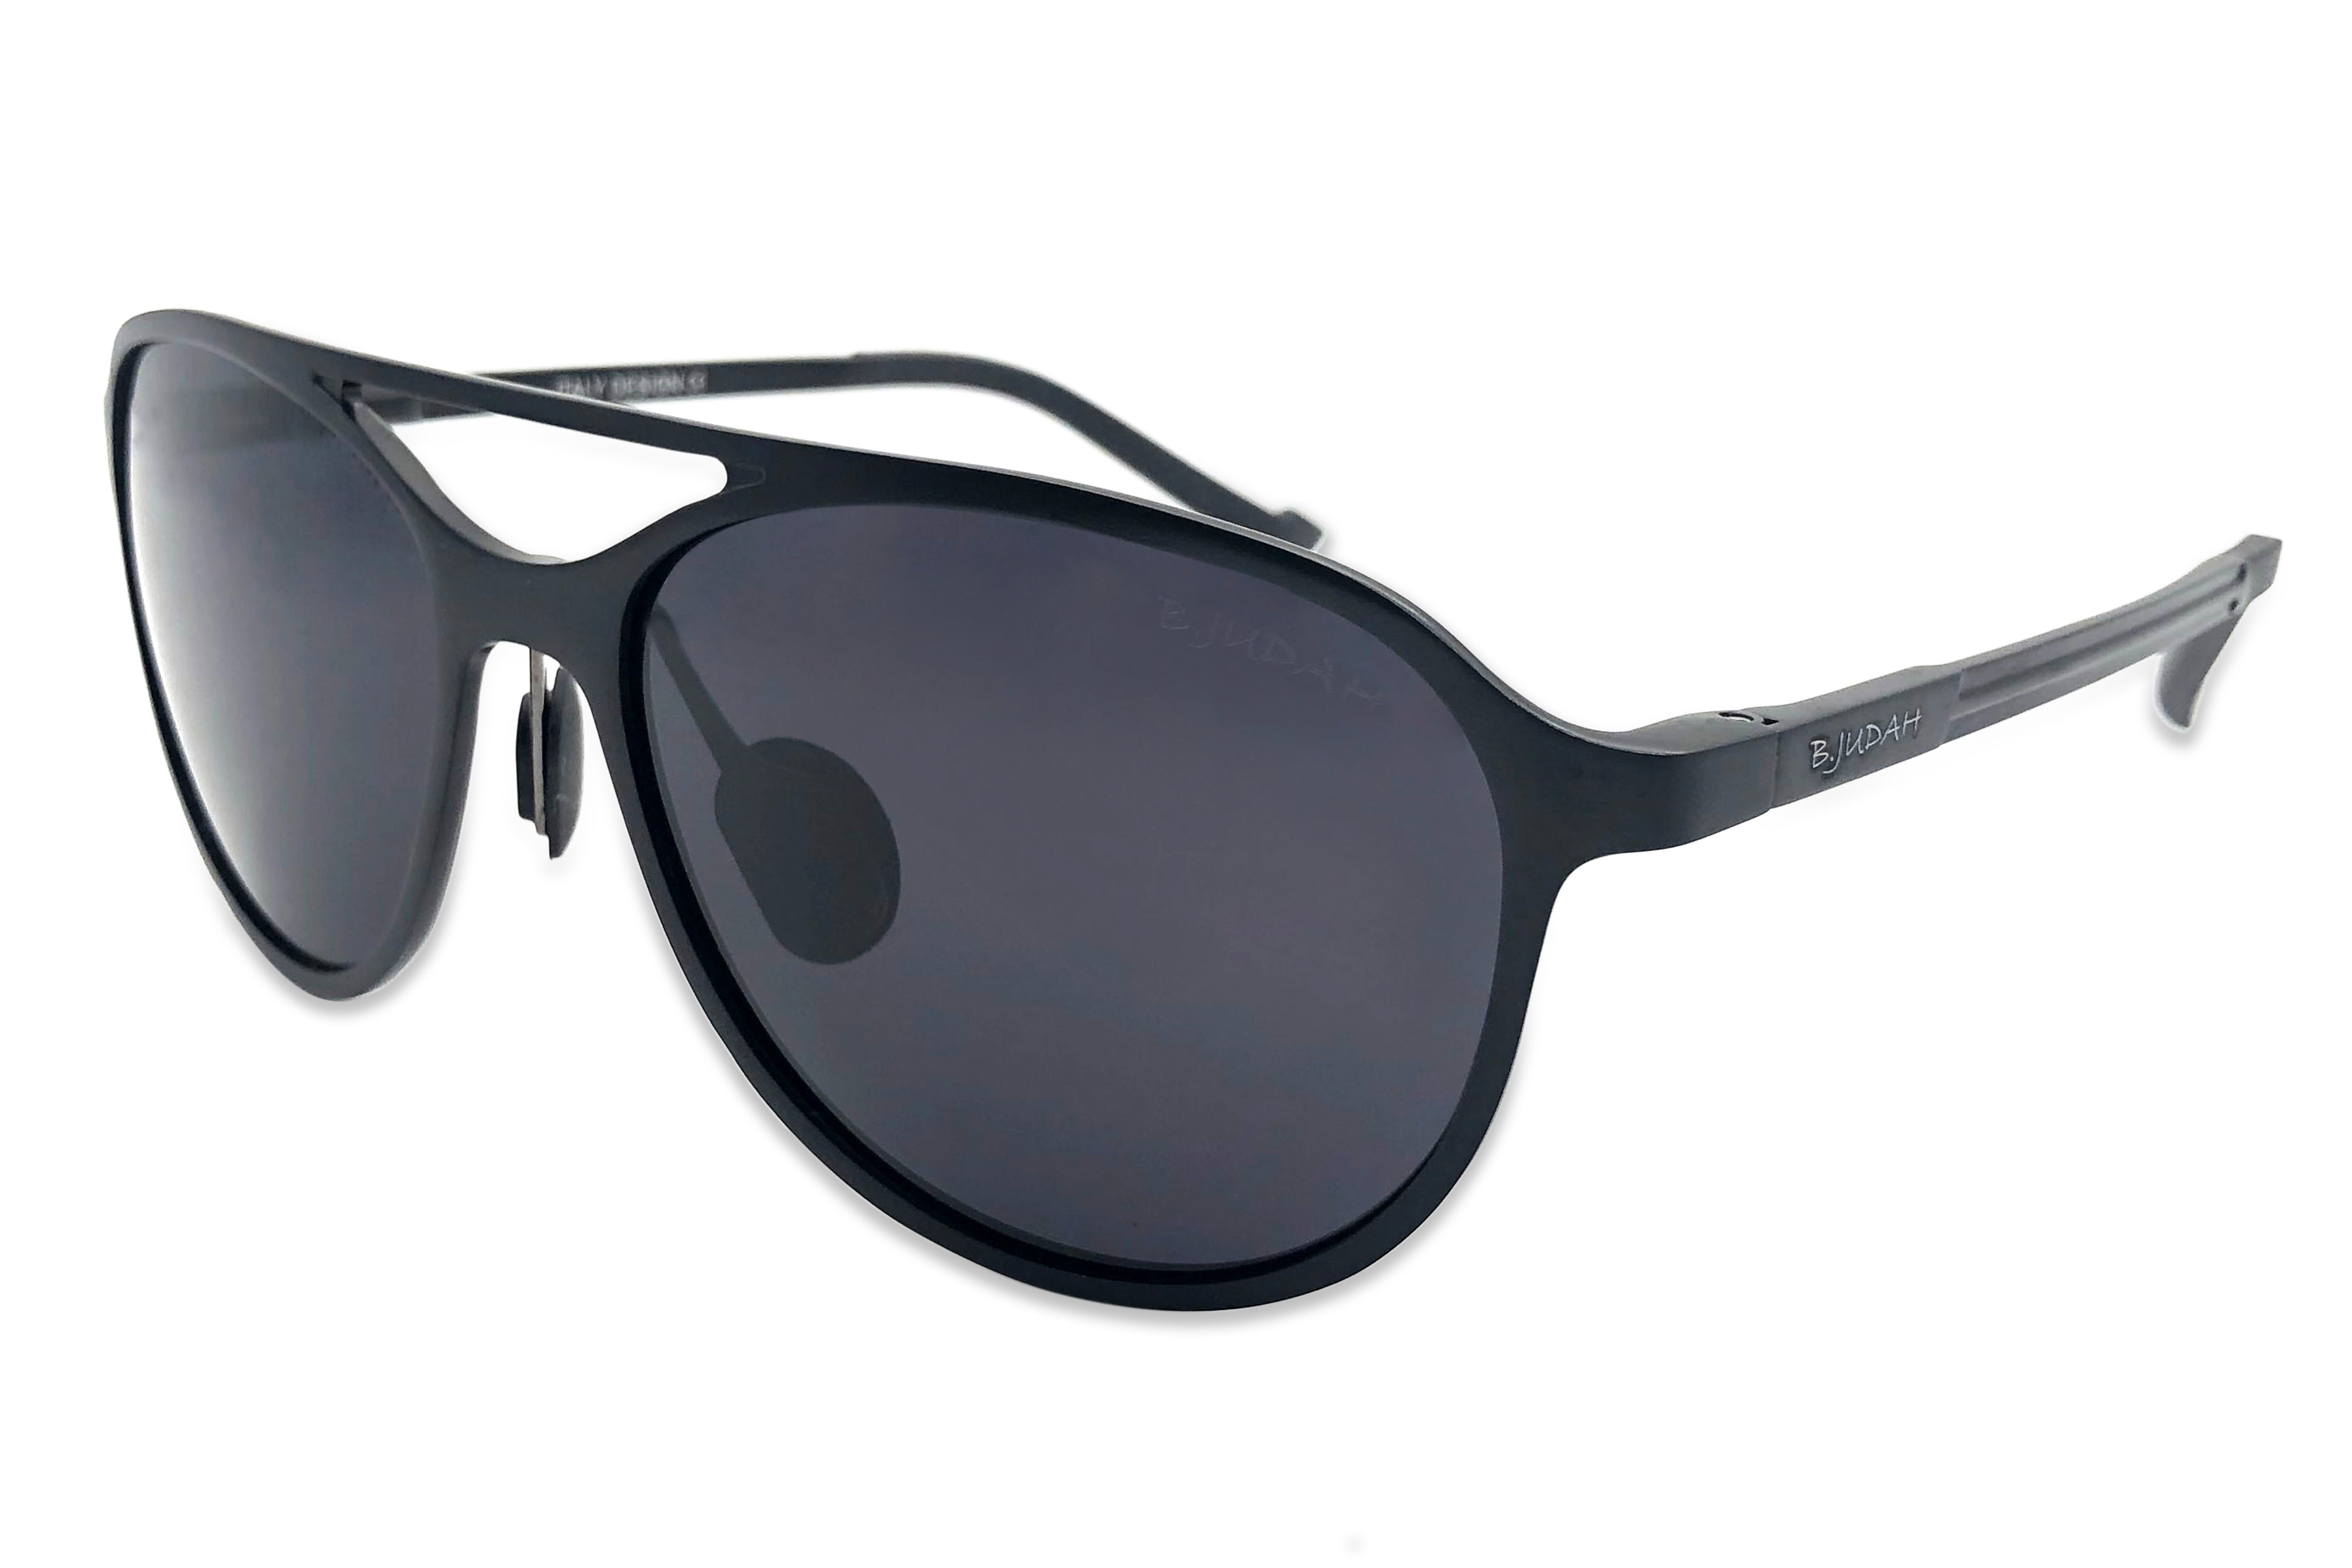 B. Judah Eyewear and Sunglasses - Aluminium Series, Sunglasses